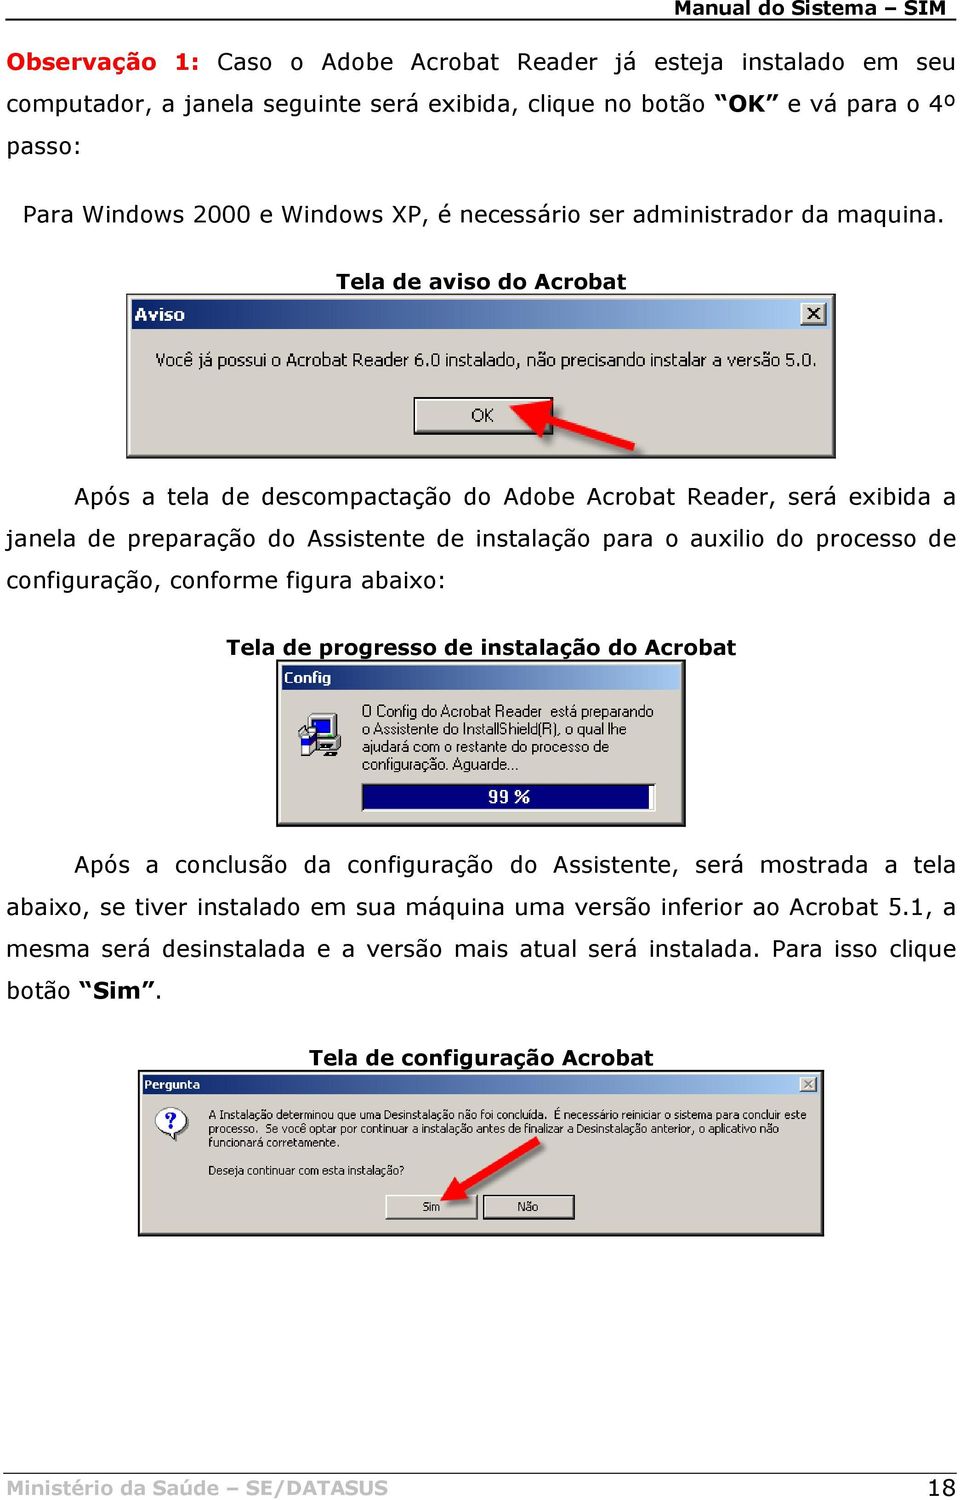 Tela de aviso do Acrobat Após a tela de descompactação do Adobe Acrobat Reader, será exibida a janela de preparação do Assistente de instalação para o auxilio do processo de configuração, conforme